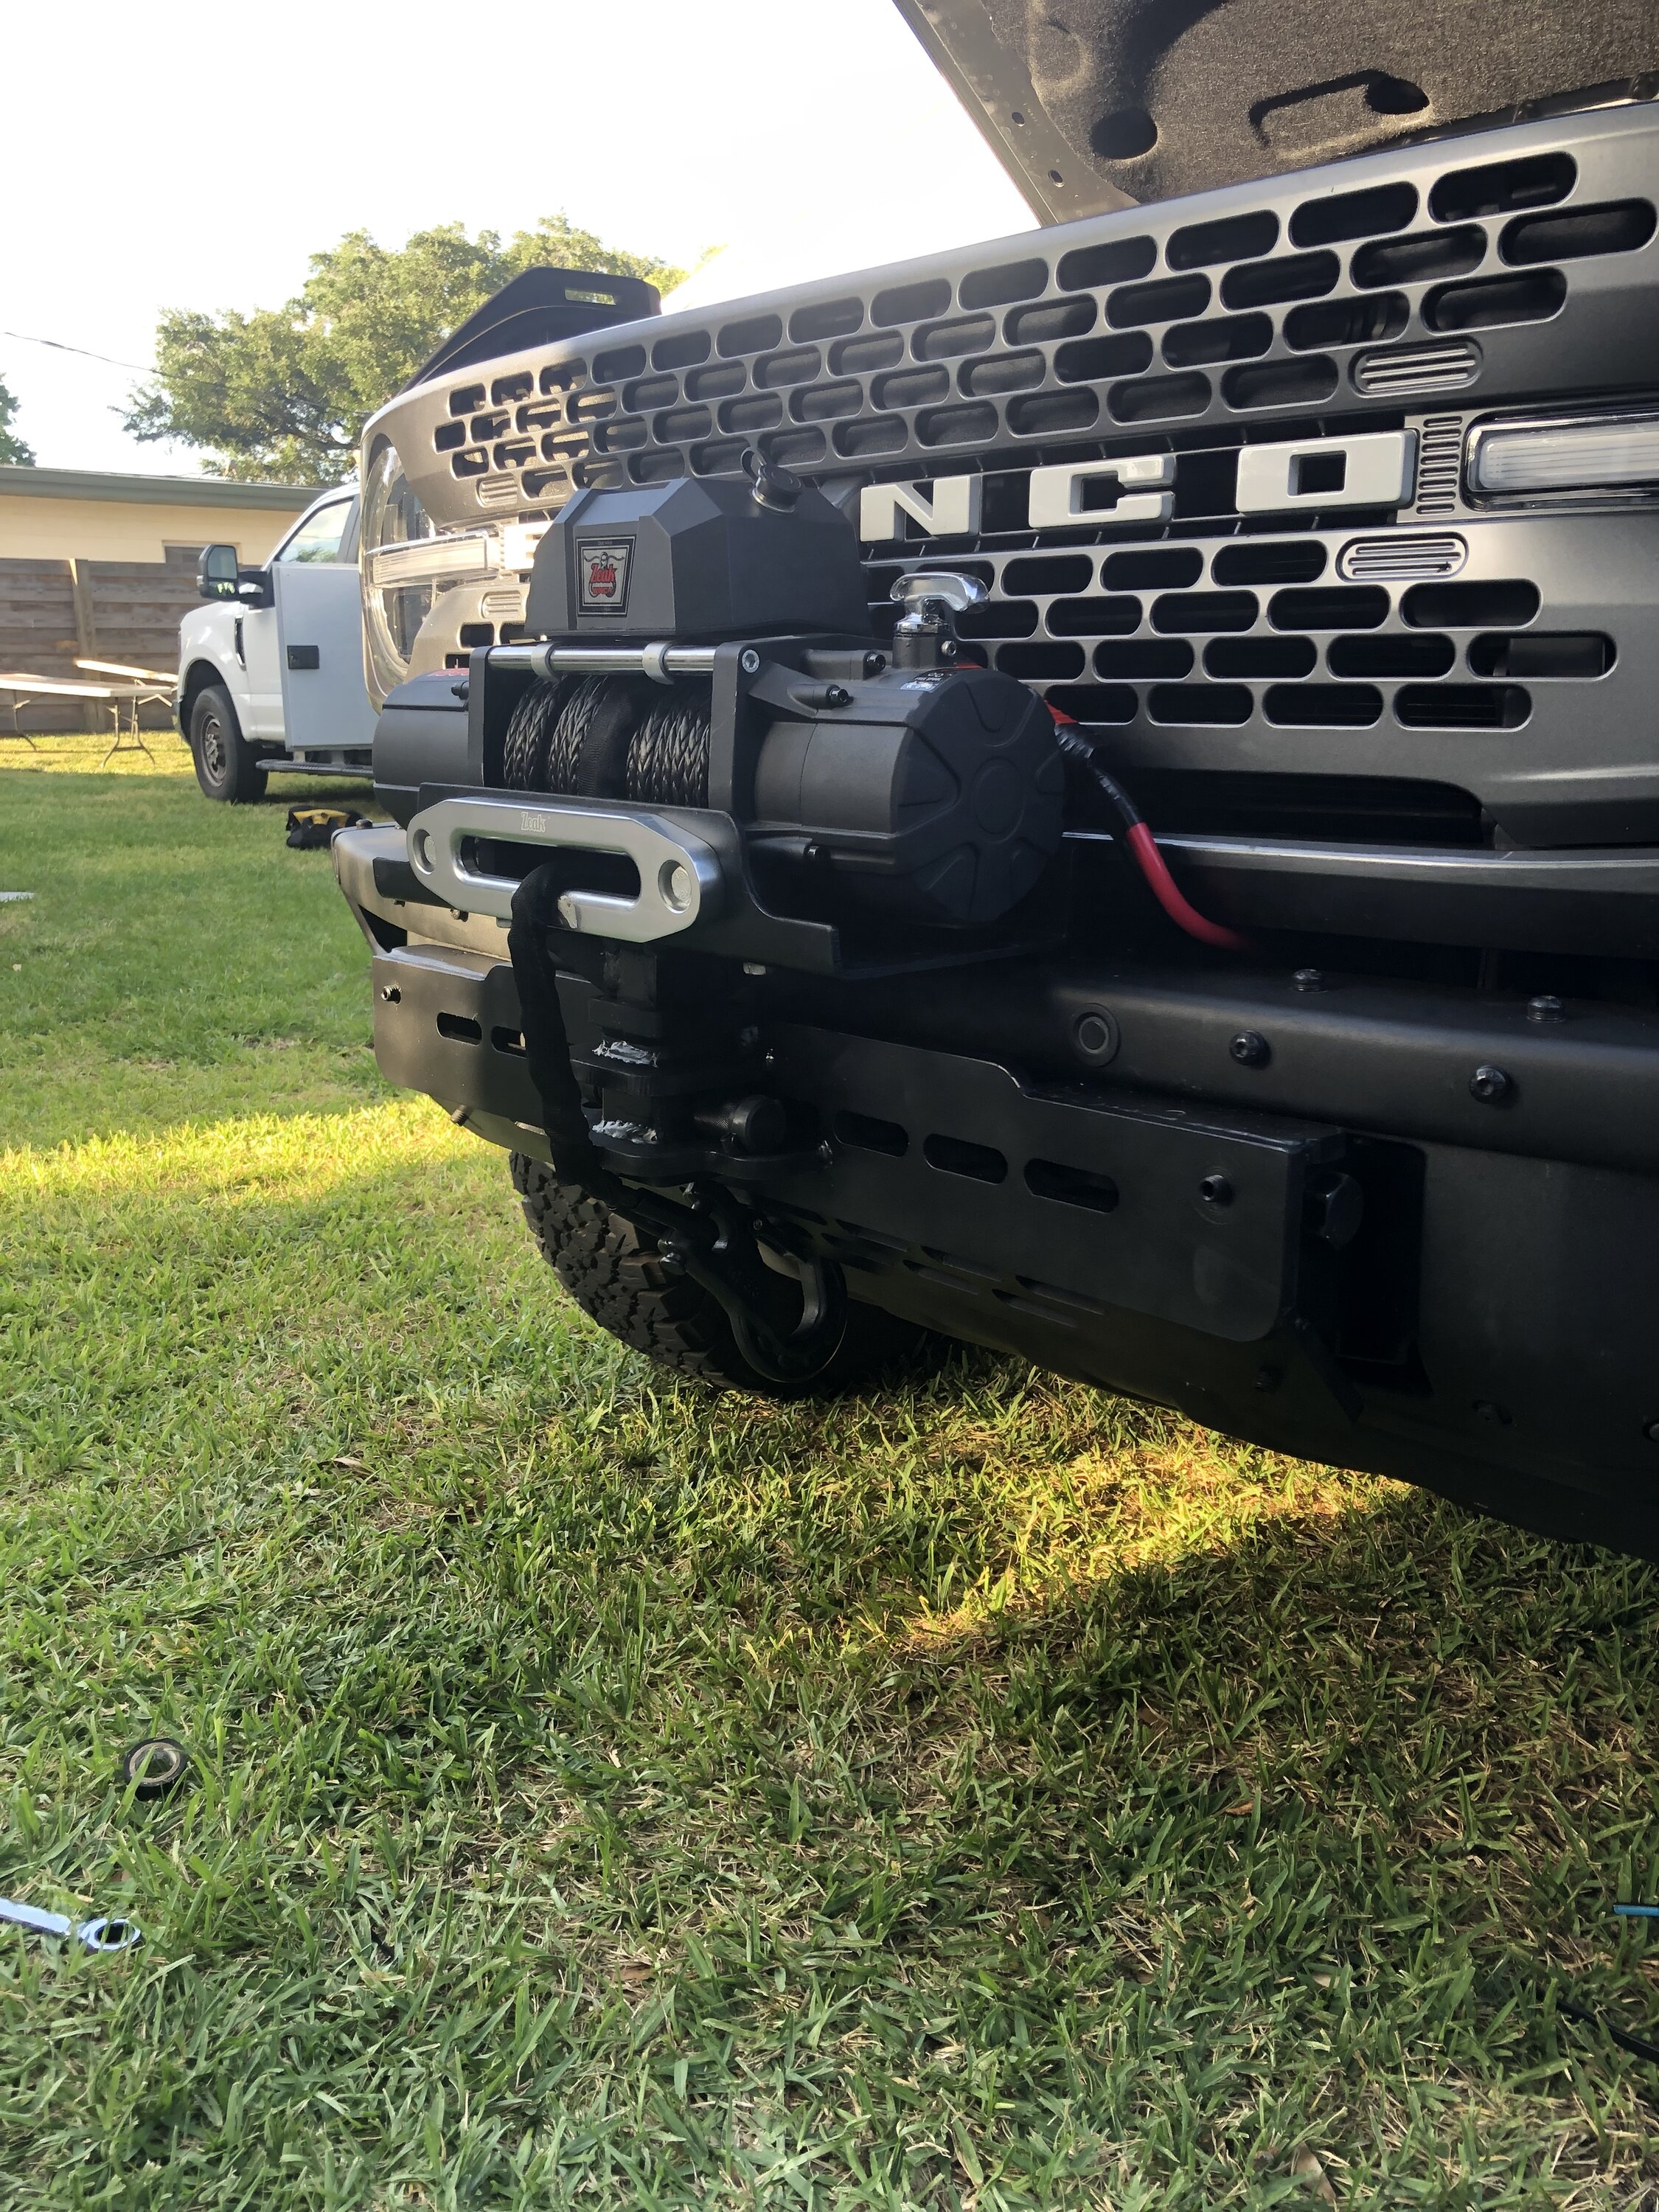 Ford Bronco Anyone Installed a Front Mount Trailer Hitch Receiver? 7DA1C39E-0178-4FDE-80B5-5E1D4E8711AA